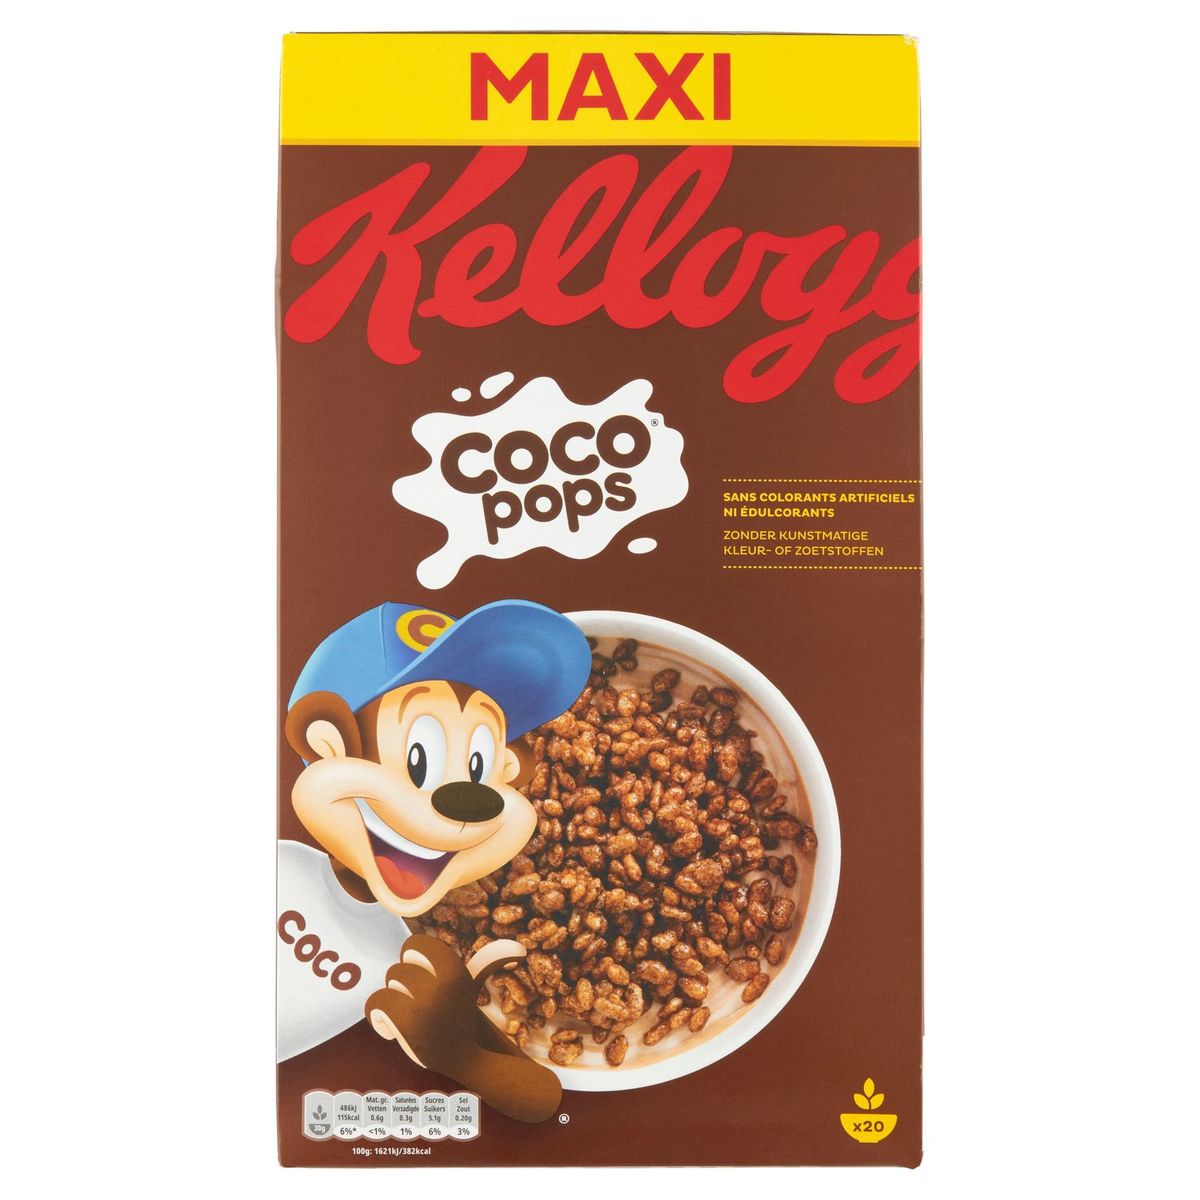 Kellogg's Coco Pops Maxi 600 g